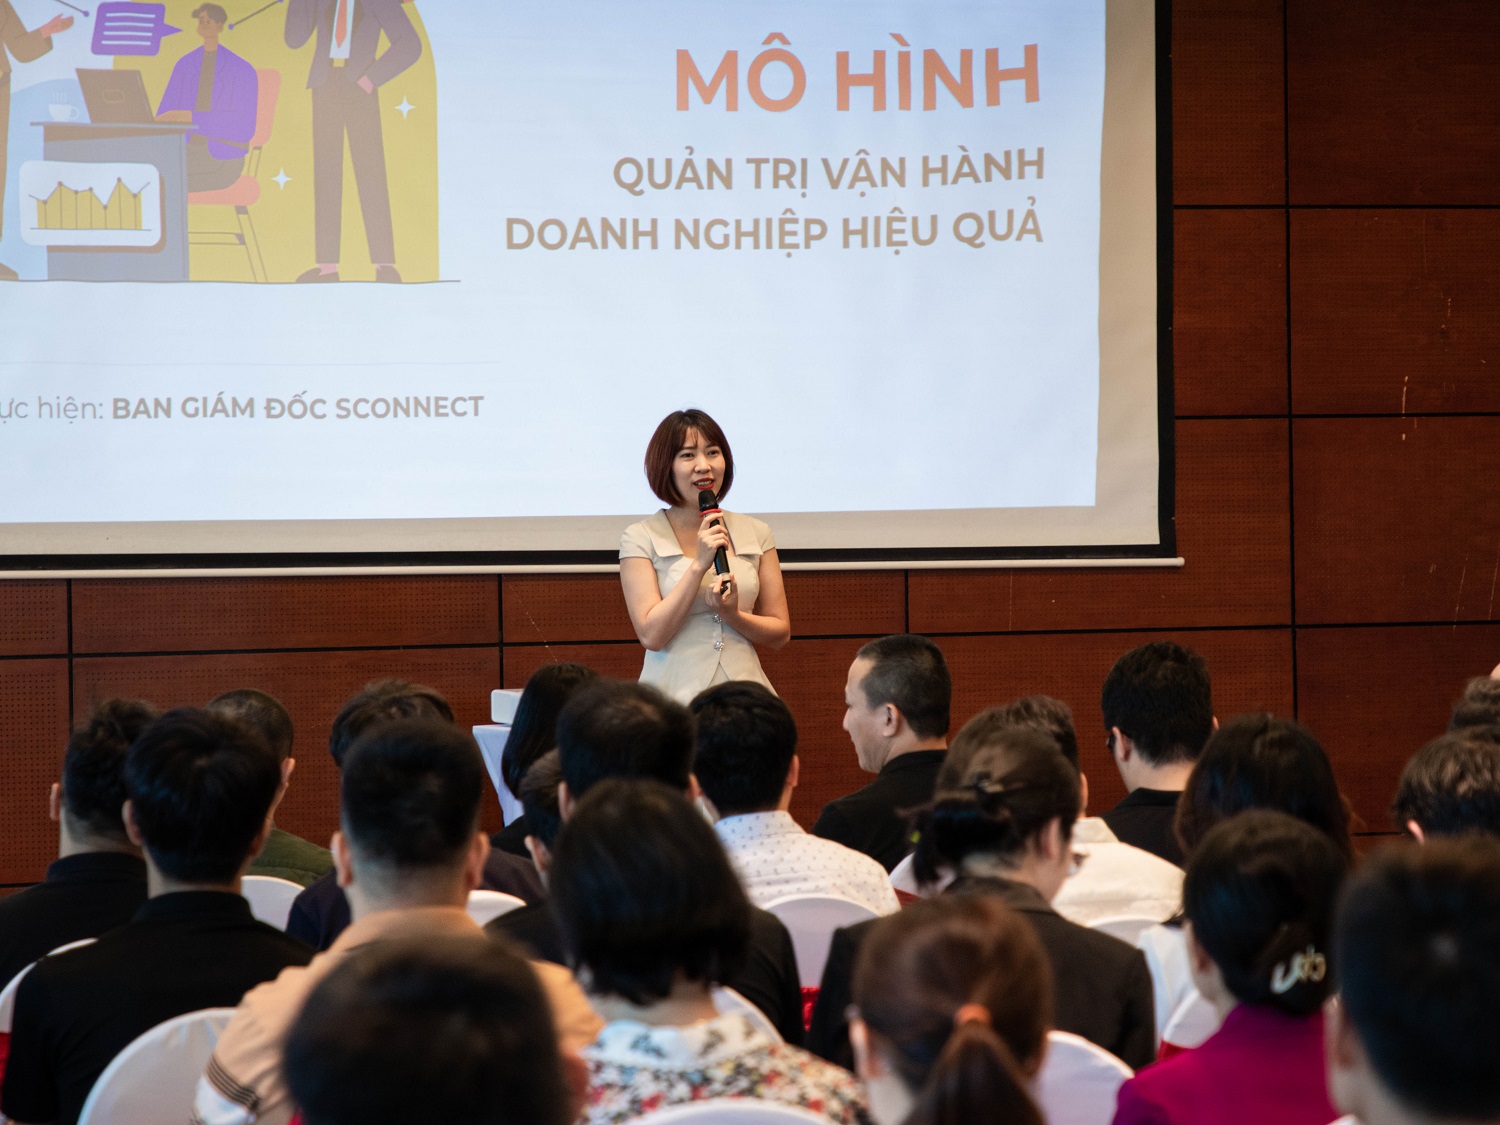 Bà Nguyễn Thị Phượng - Phó Tổng giám đốc Sconnect